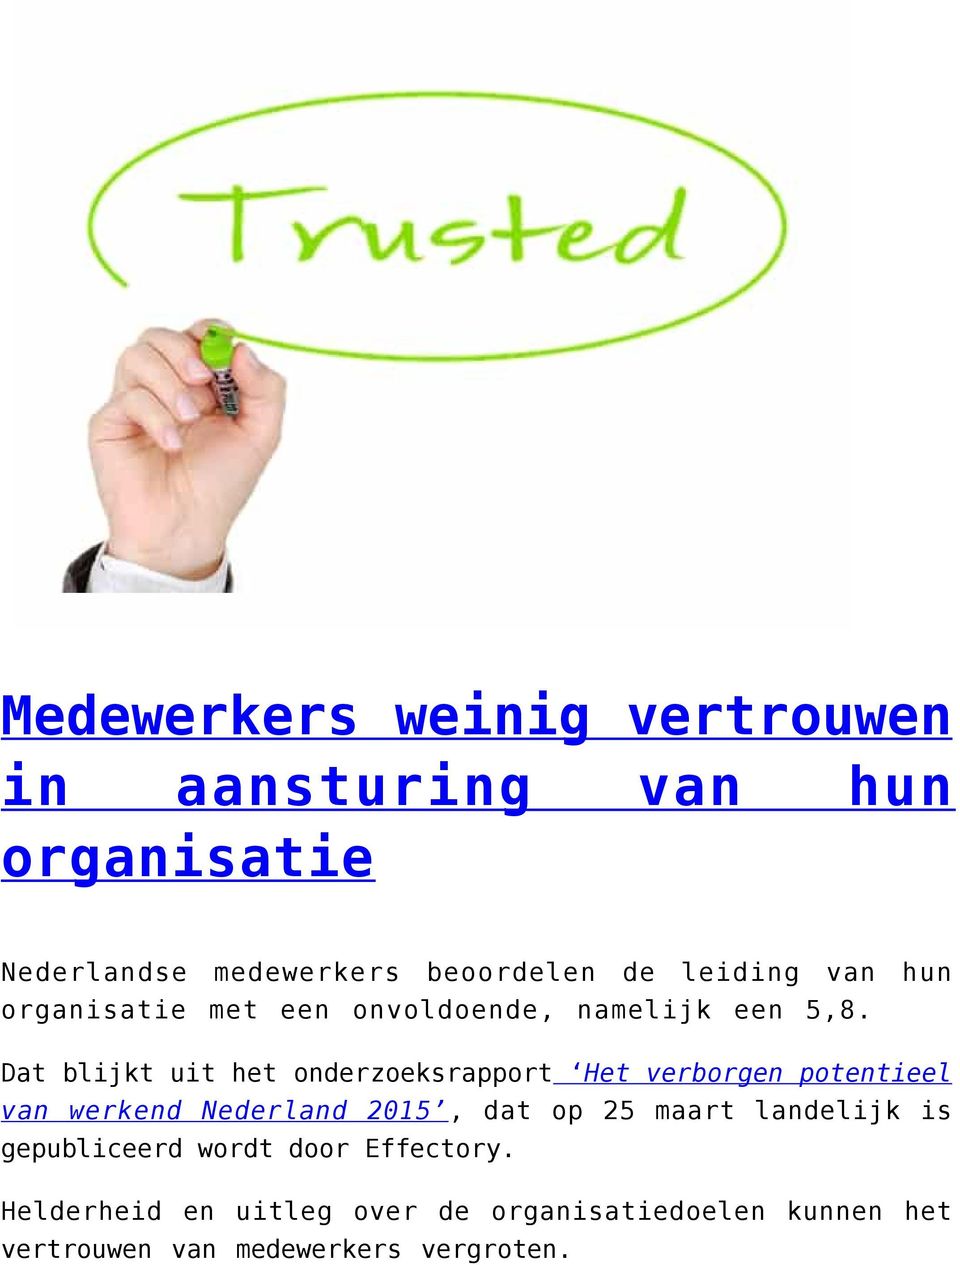 Dat blijkt uit het onderzoeksrapport Het verborgen potentieel van werkend Nederland 2015, dat op 25